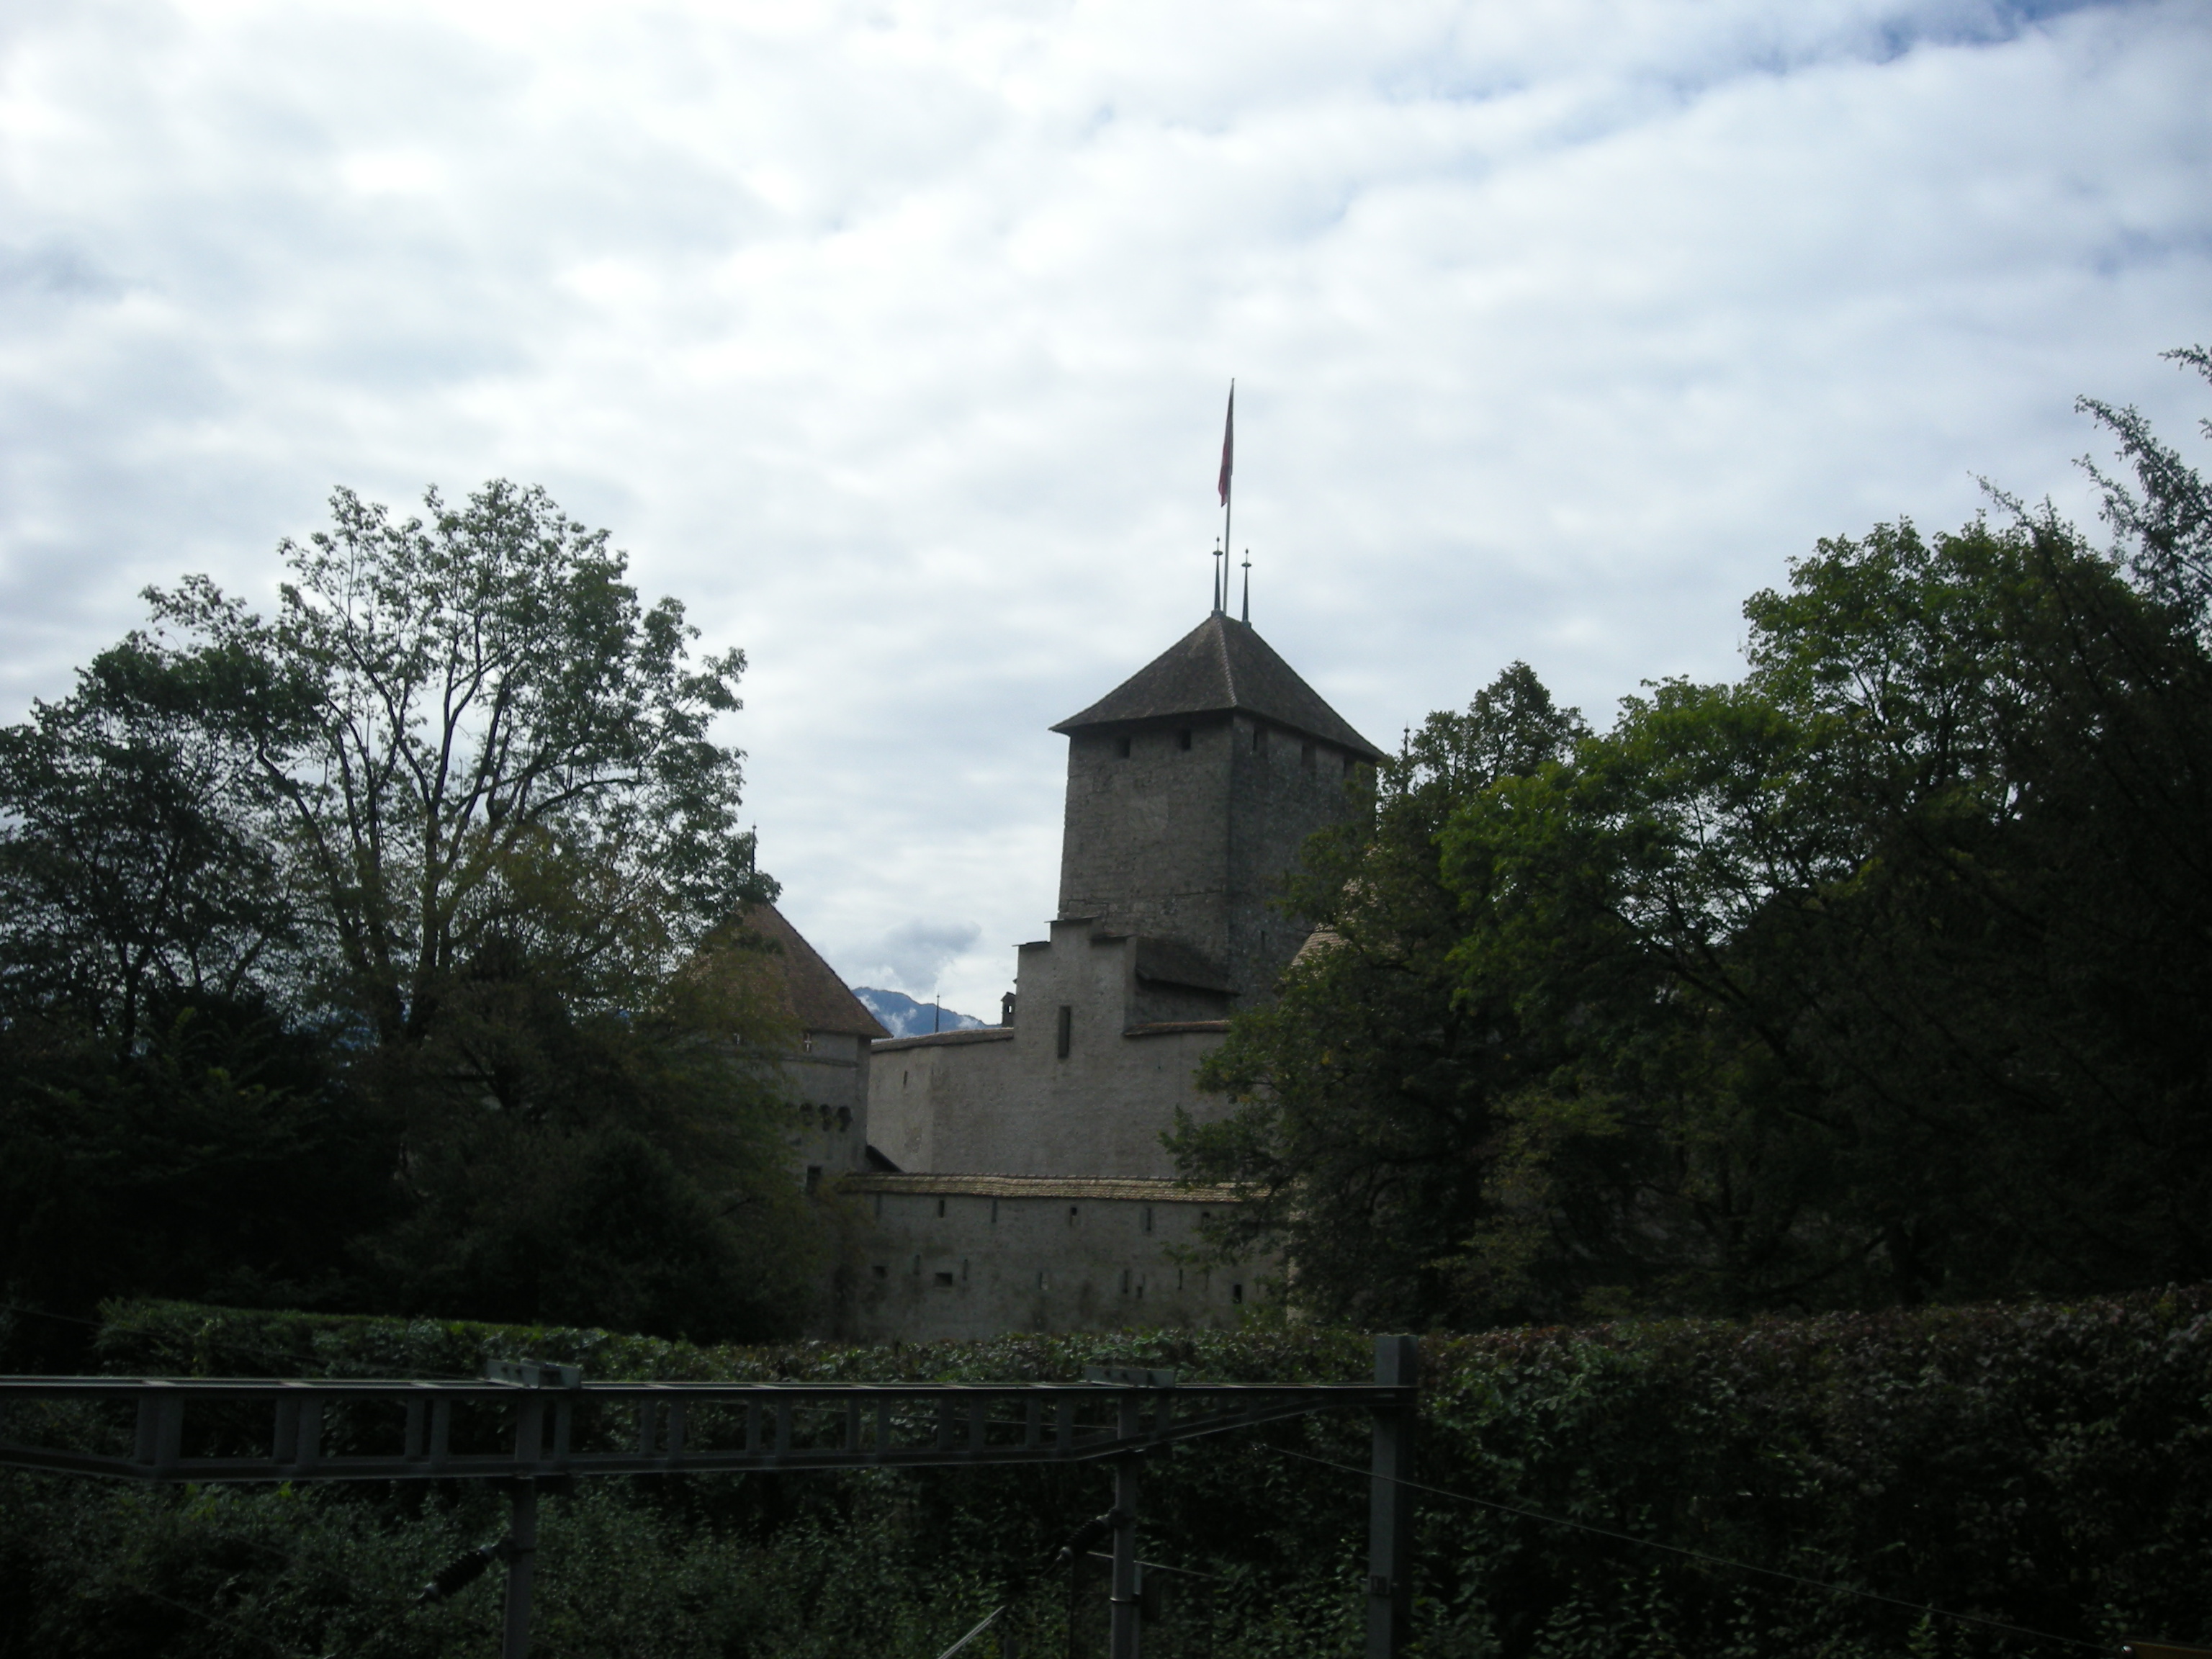 Copyright: AGIR - Le lancement de la communauté de la marque VAUD se déroule dans un lieu emblématique, le château de Chillon.